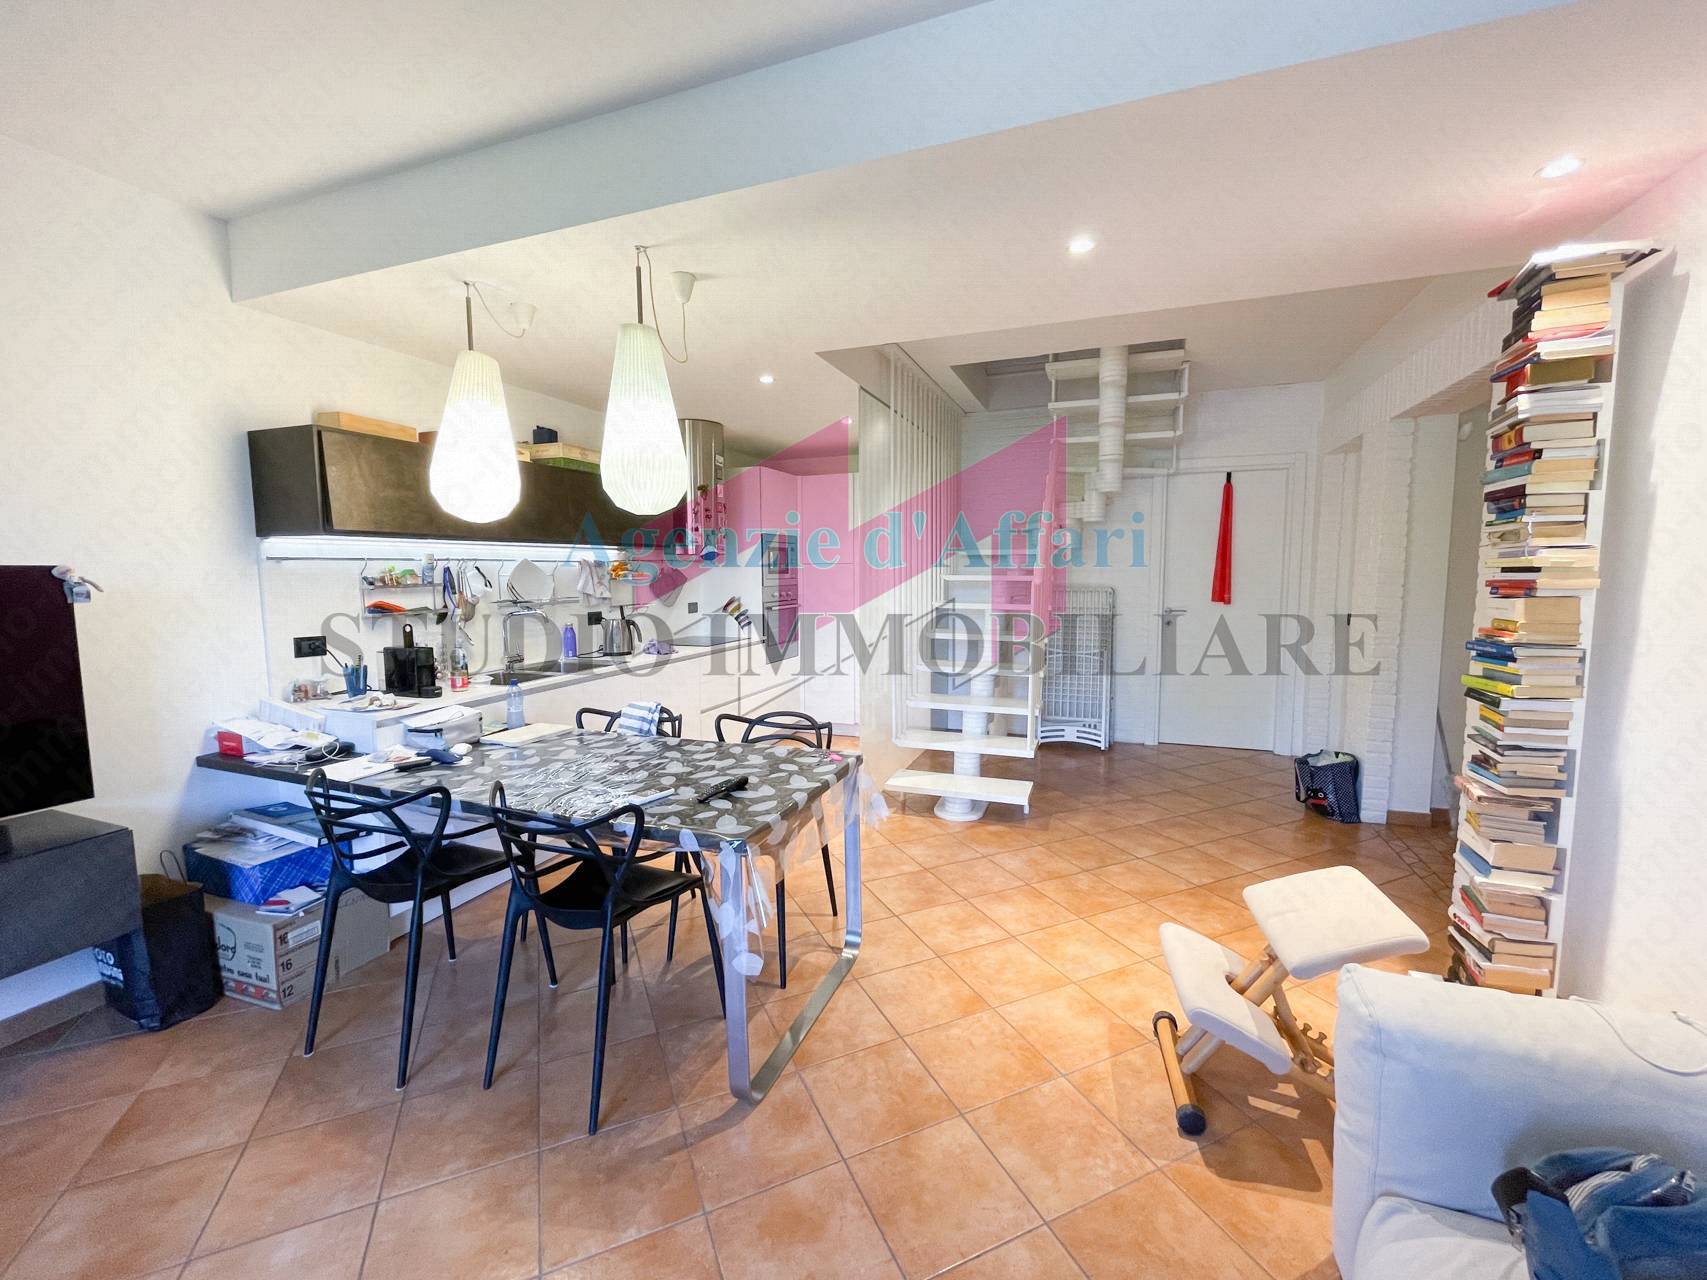 Appartamento in vendita a Castelmassa, 4 locali, prezzo € 120.000 | PortaleAgenzieImmobiliari.it